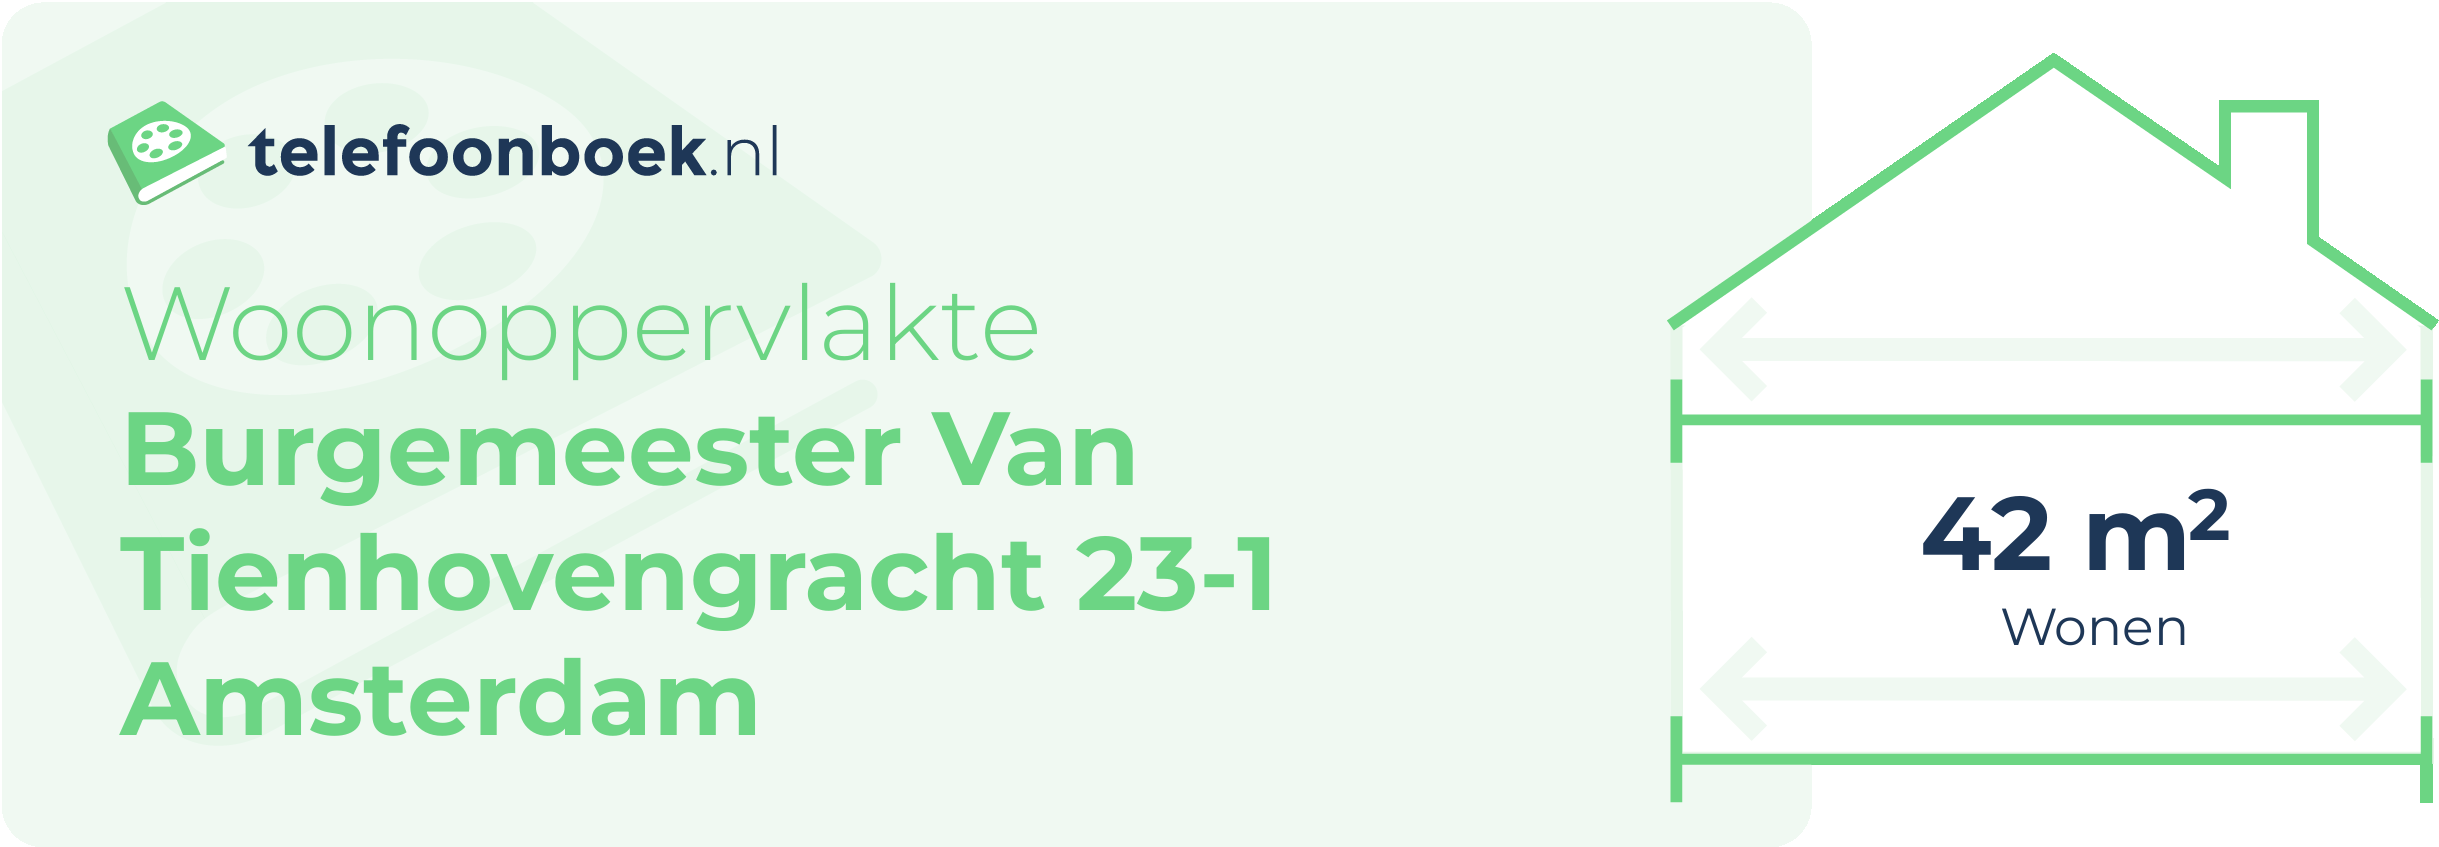 Woonoppervlakte Burgemeester Van Tienhovengracht 23-1 Amsterdam